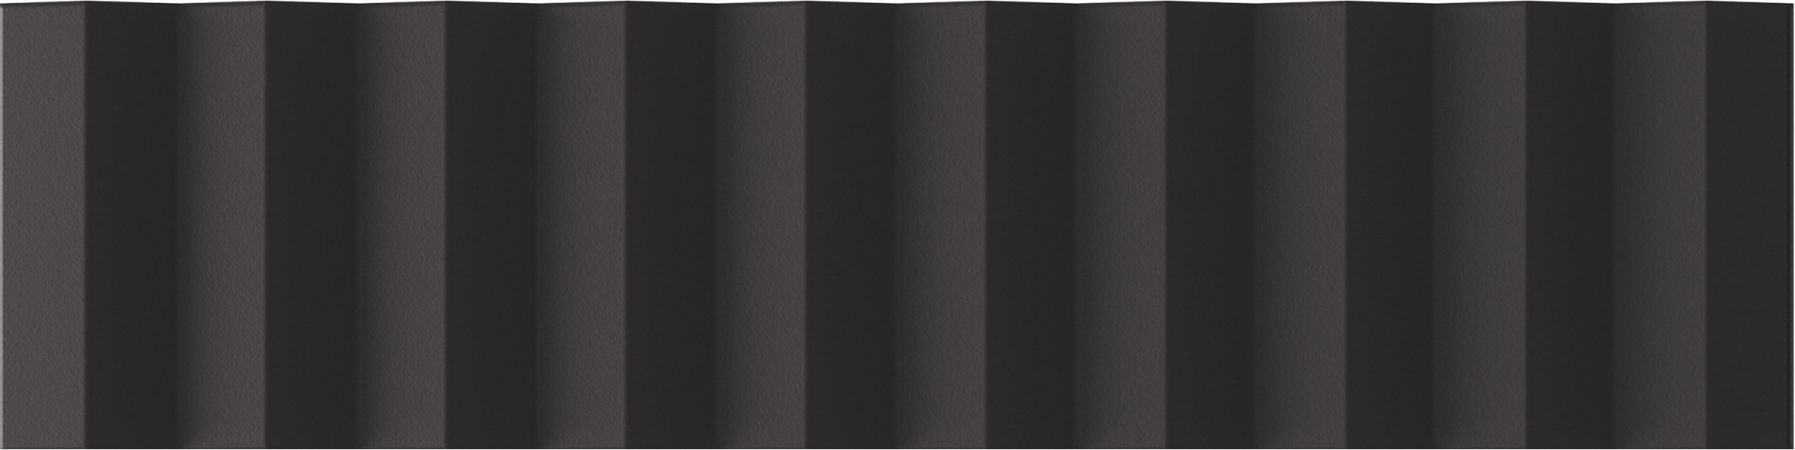 Керамическая плитка Wow Twin Peaks Up Nero 131547, цвет чёрный, поверхность матовая 3d (объёмная), под кирпич, 75x300